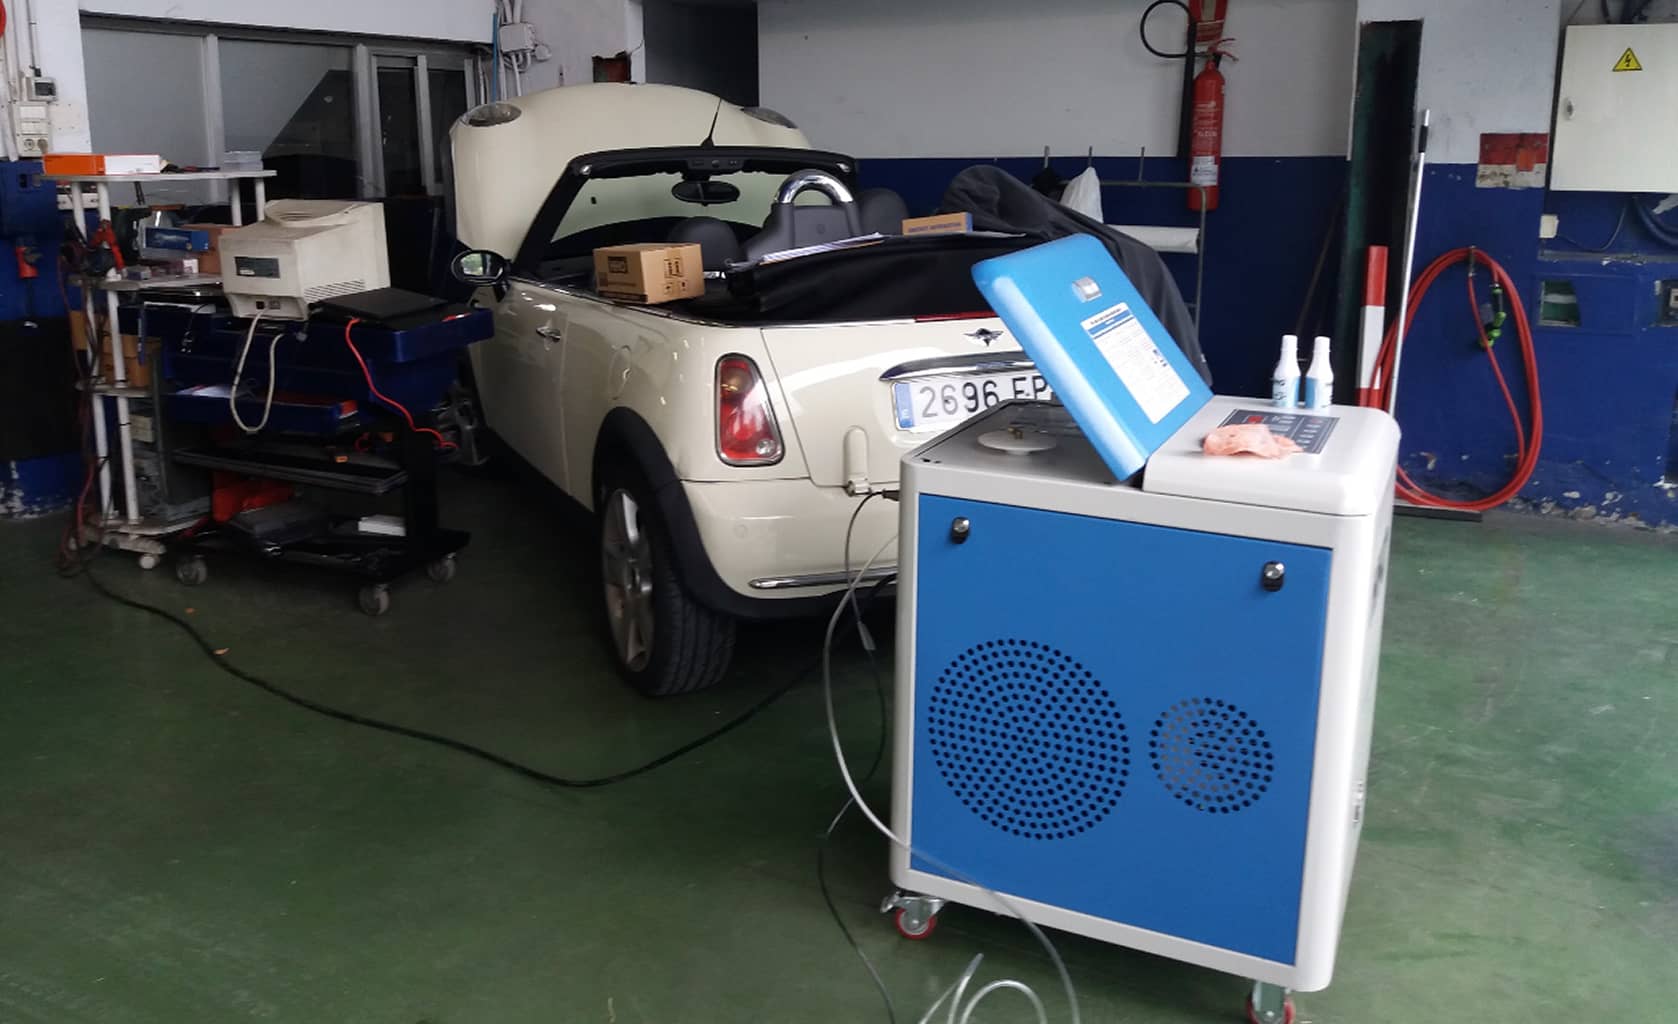 Proceso de descarbonización de un coche en el taller Autoreparaciones Lantegui